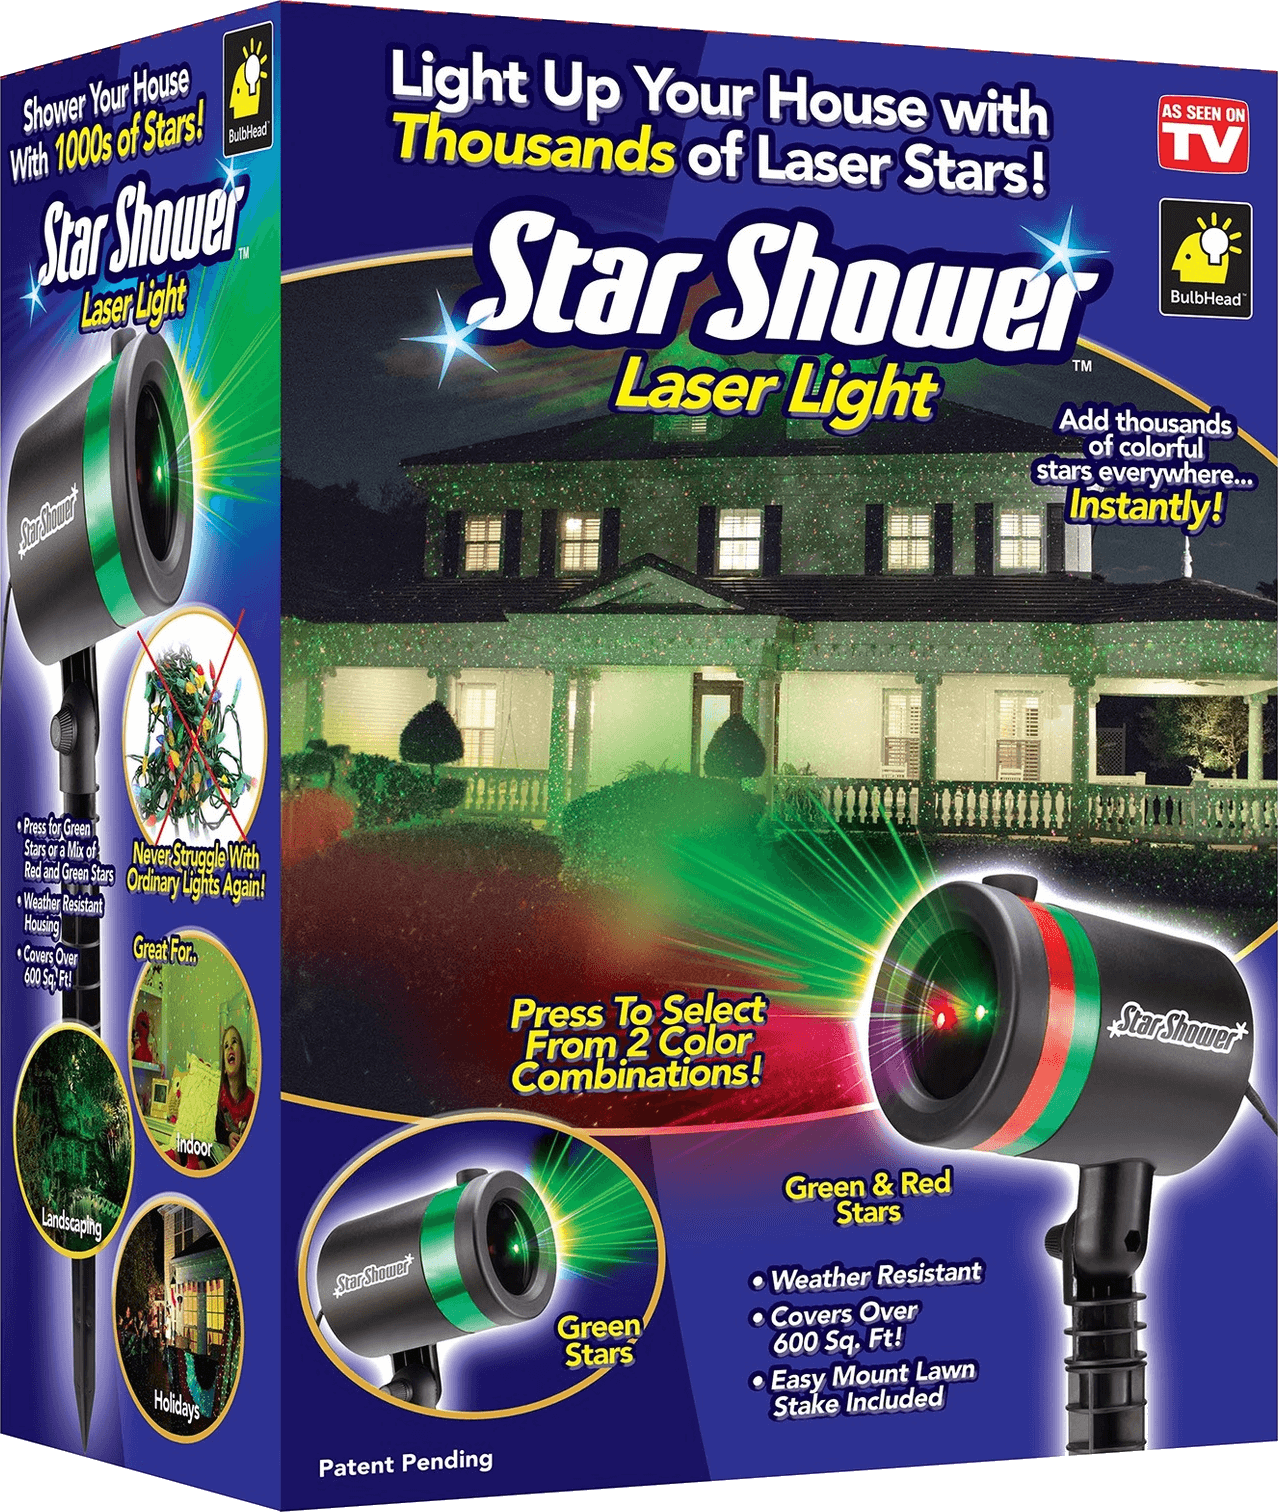 Star shower. Лазерный проектор Star Shower Laser. Лазерный Звездный проектор Star Shower Motion. Лазерный проектор Laser Light. Лазерный Звездный проектор Outdoor Laser Light.